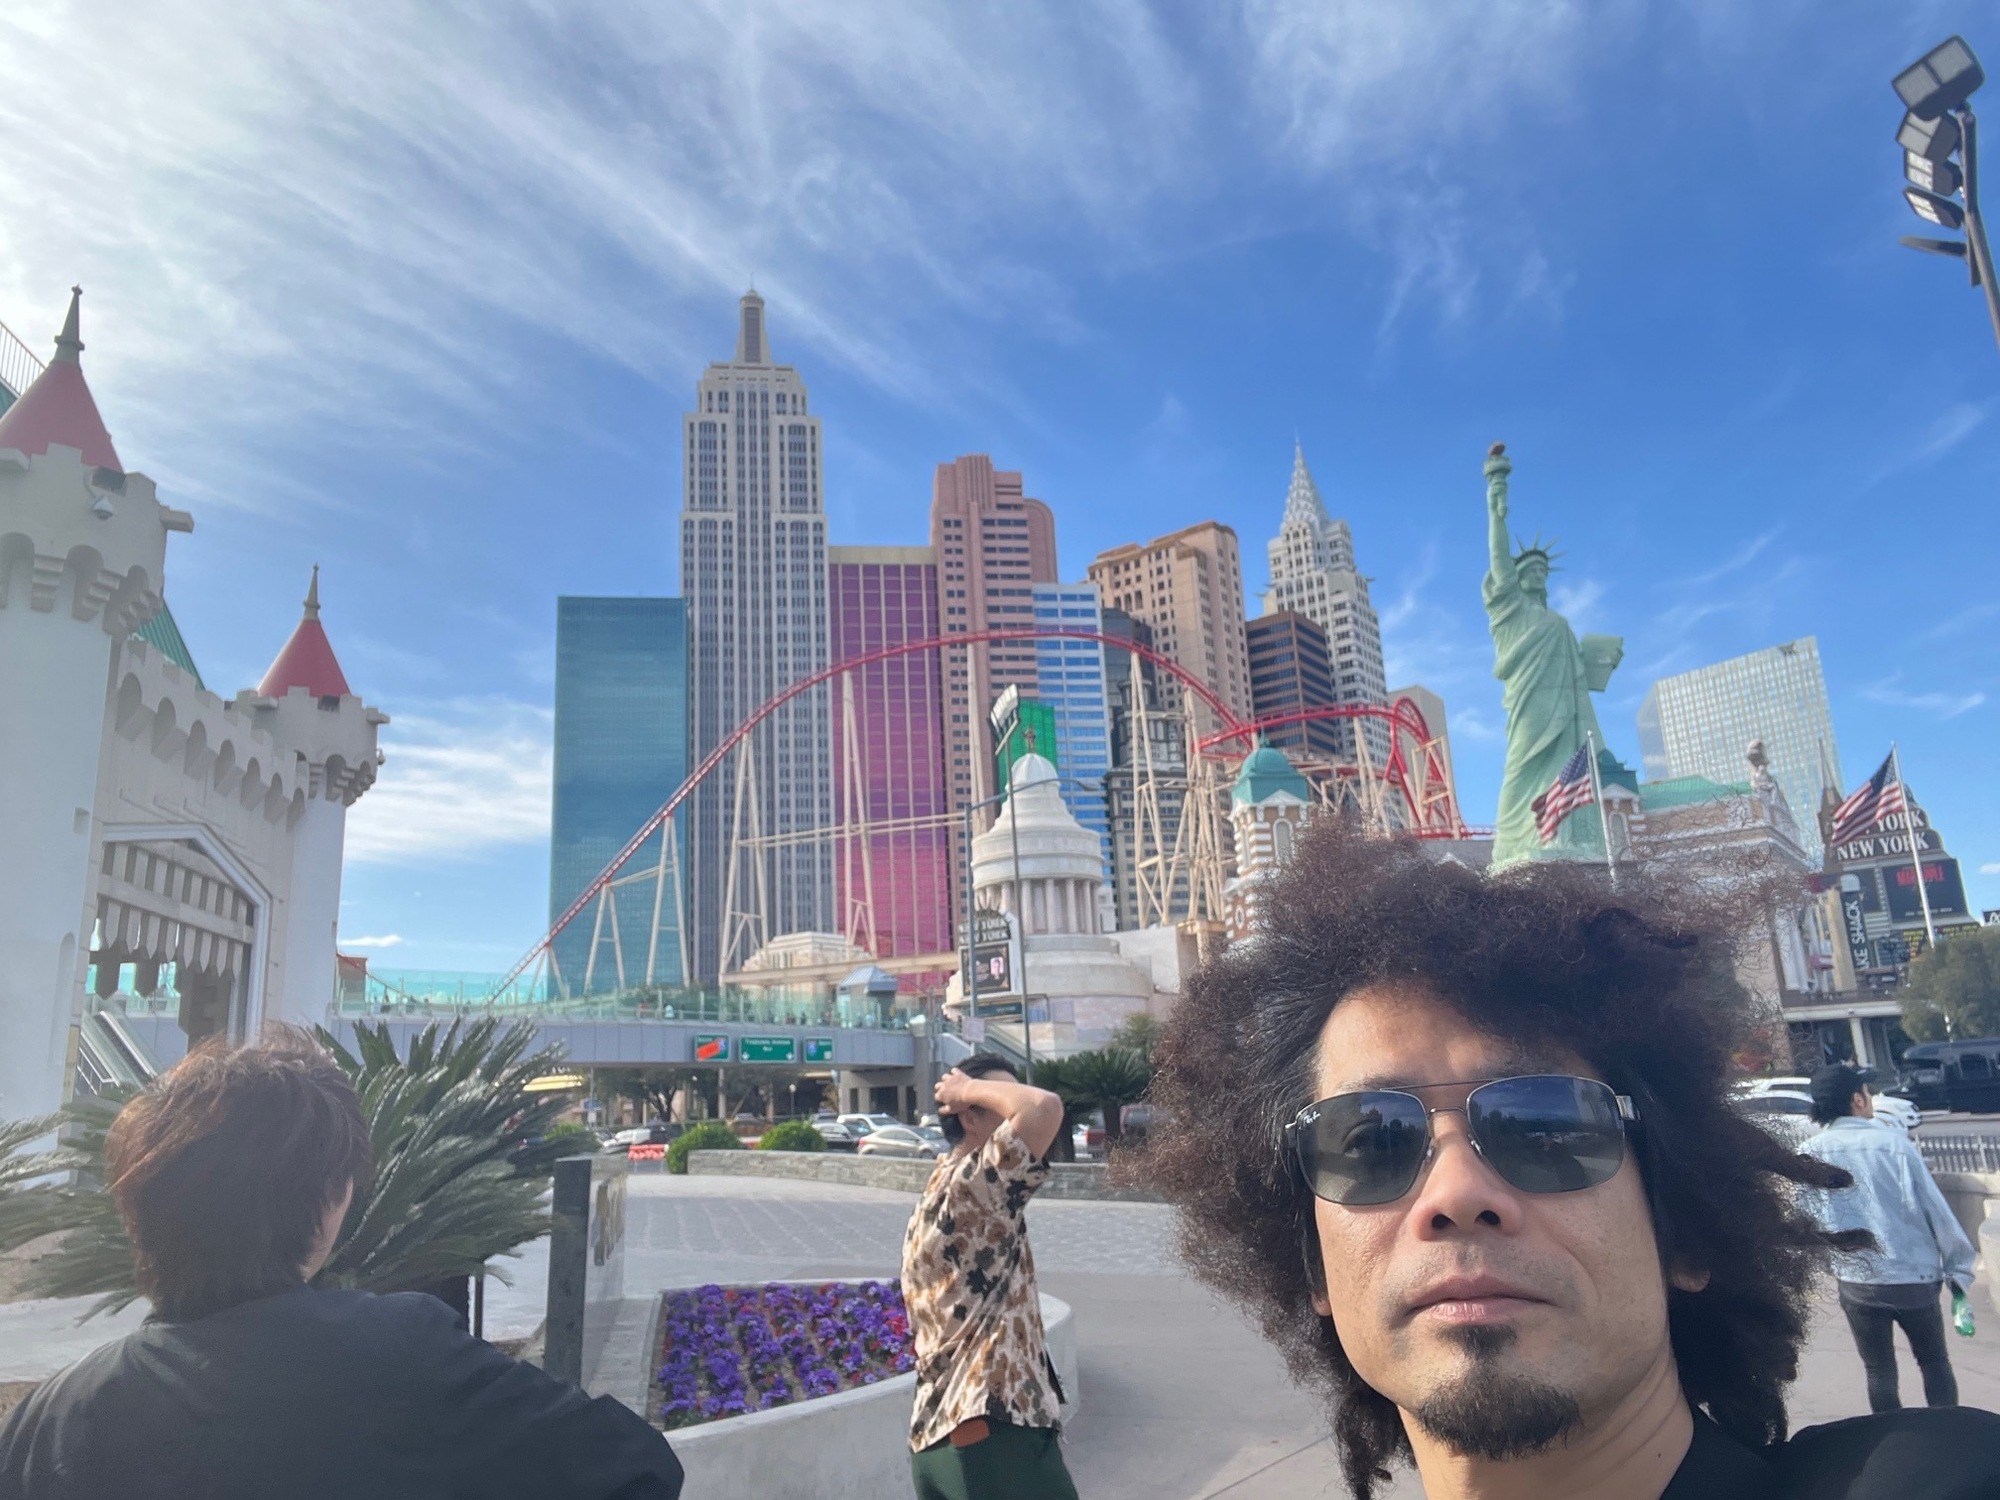 Viva! Las Vegas!